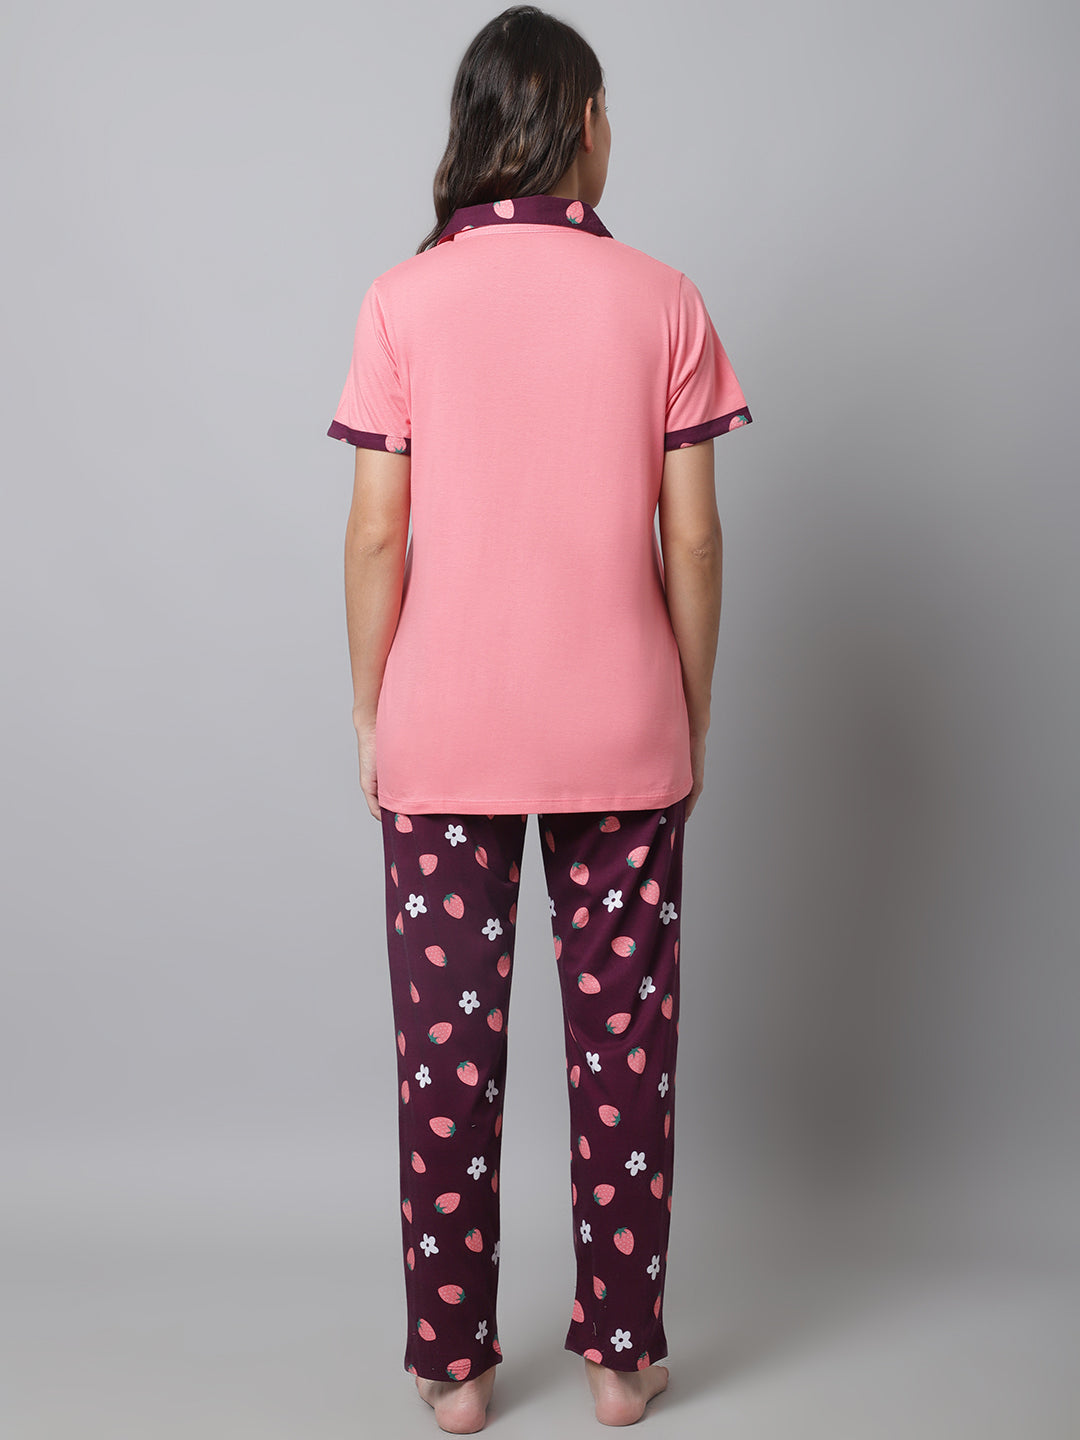 Pyjama Sets_MJKSS23158B